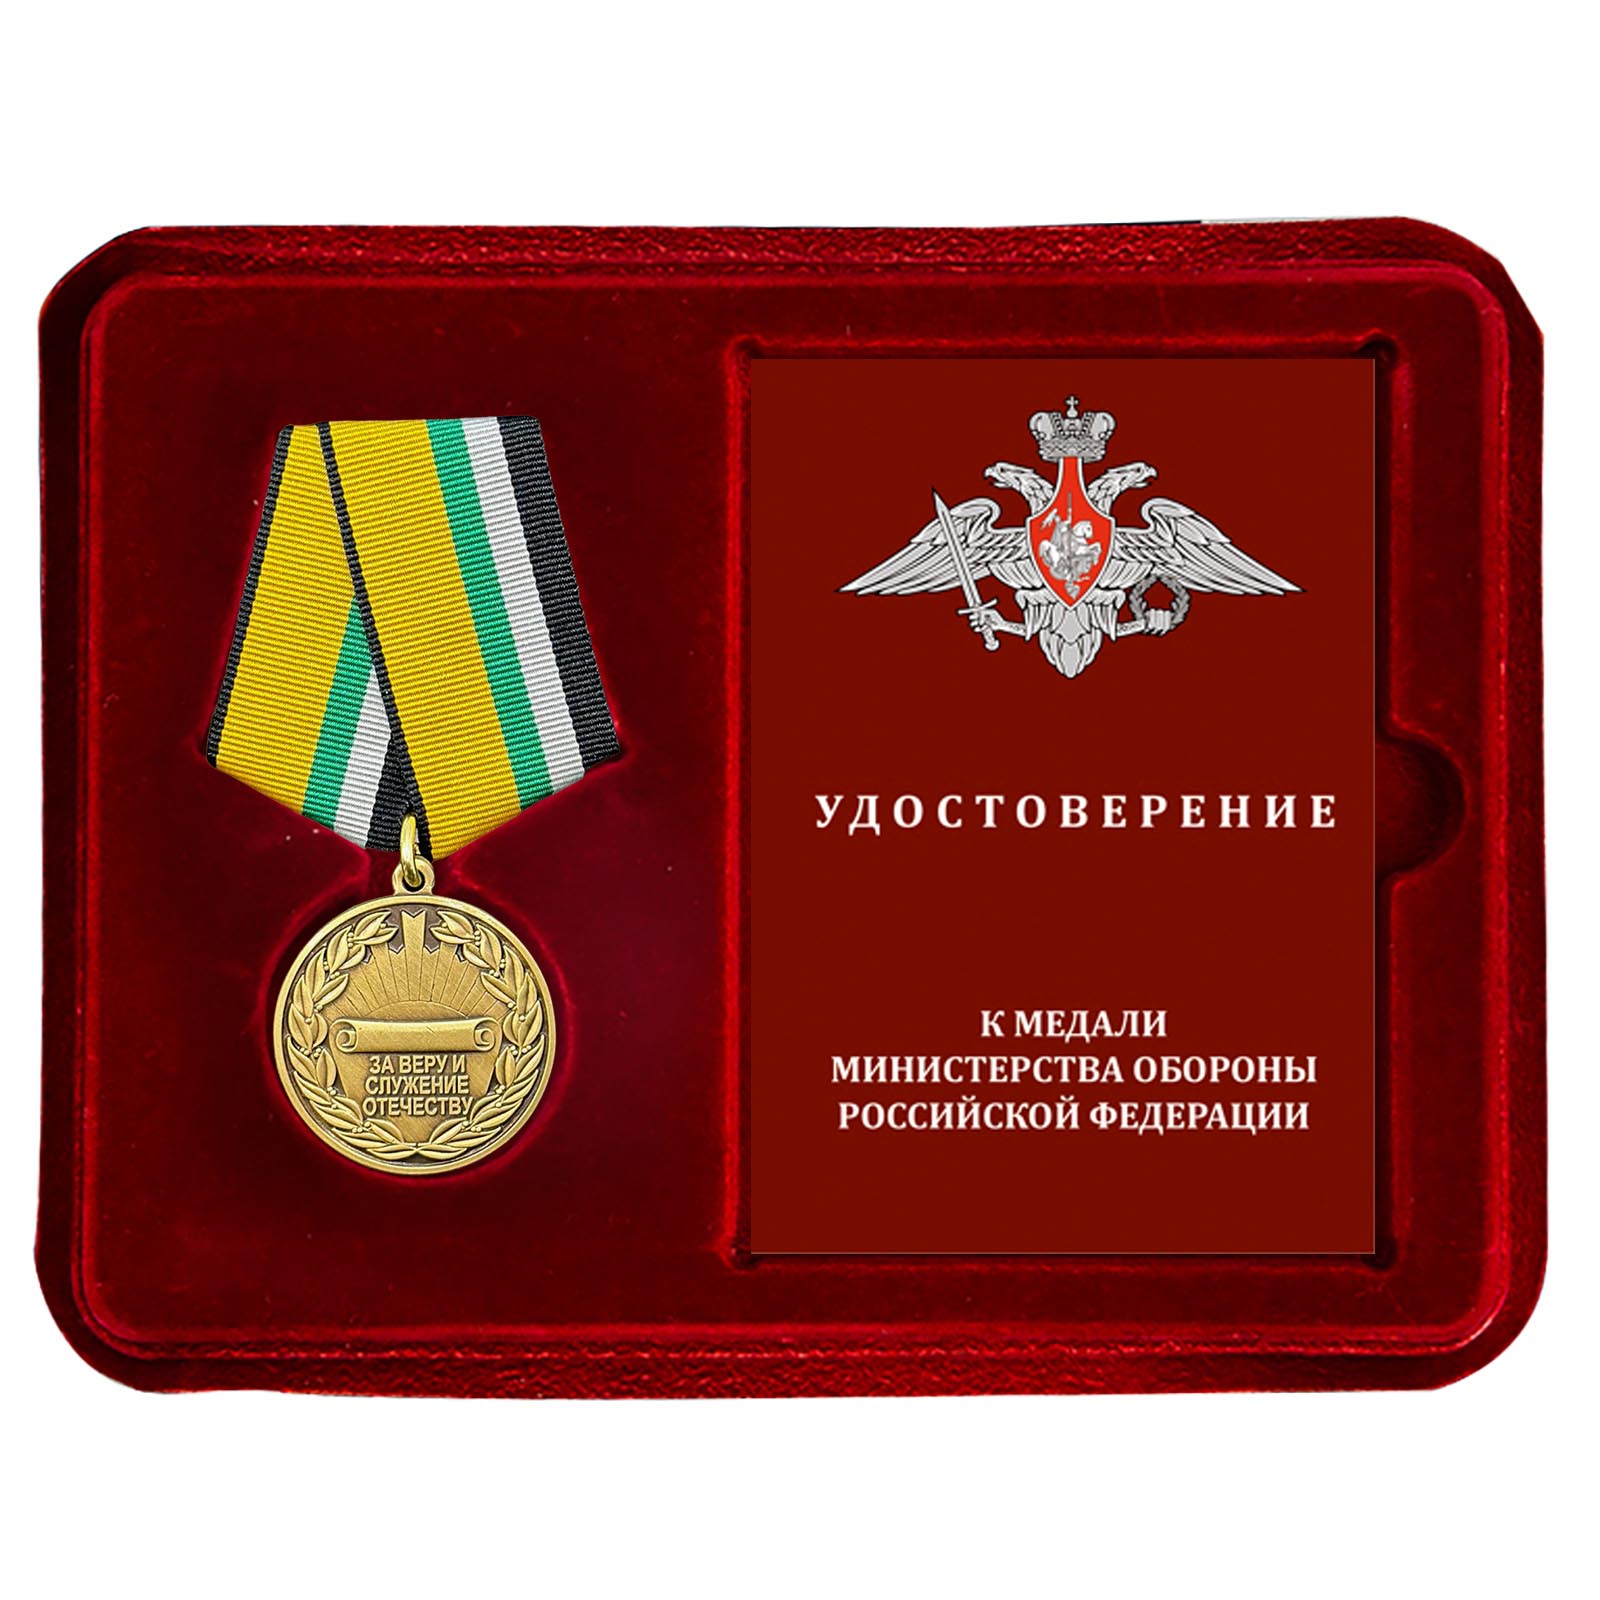 Медаль "За веру и служение Отечеству" МО РФ